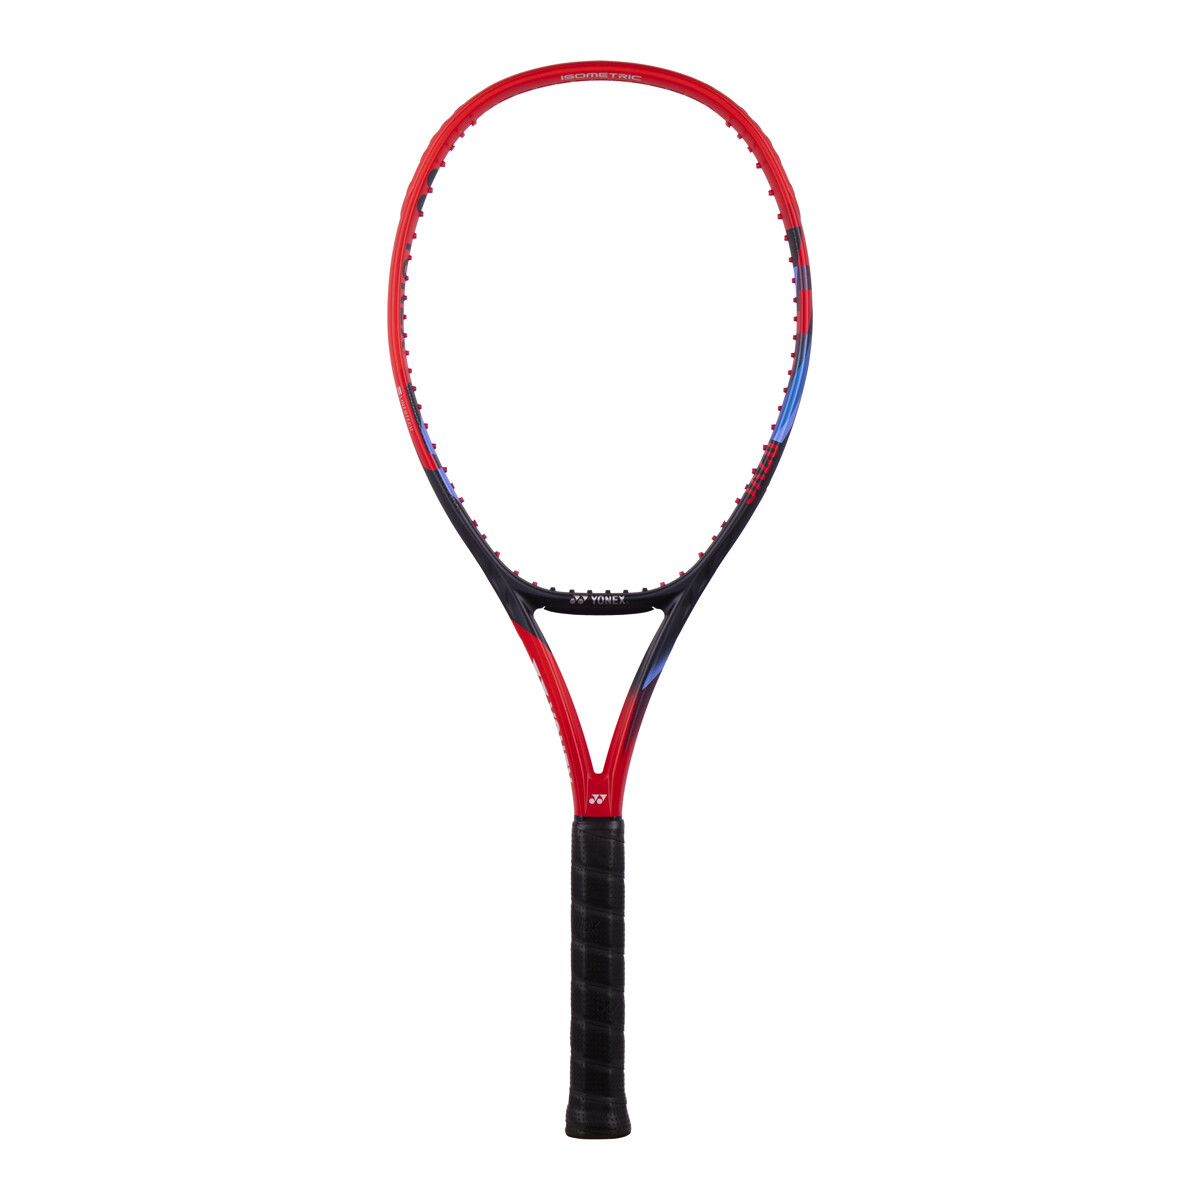 Yonex Vcore 100 Scarlet  Teniszütő